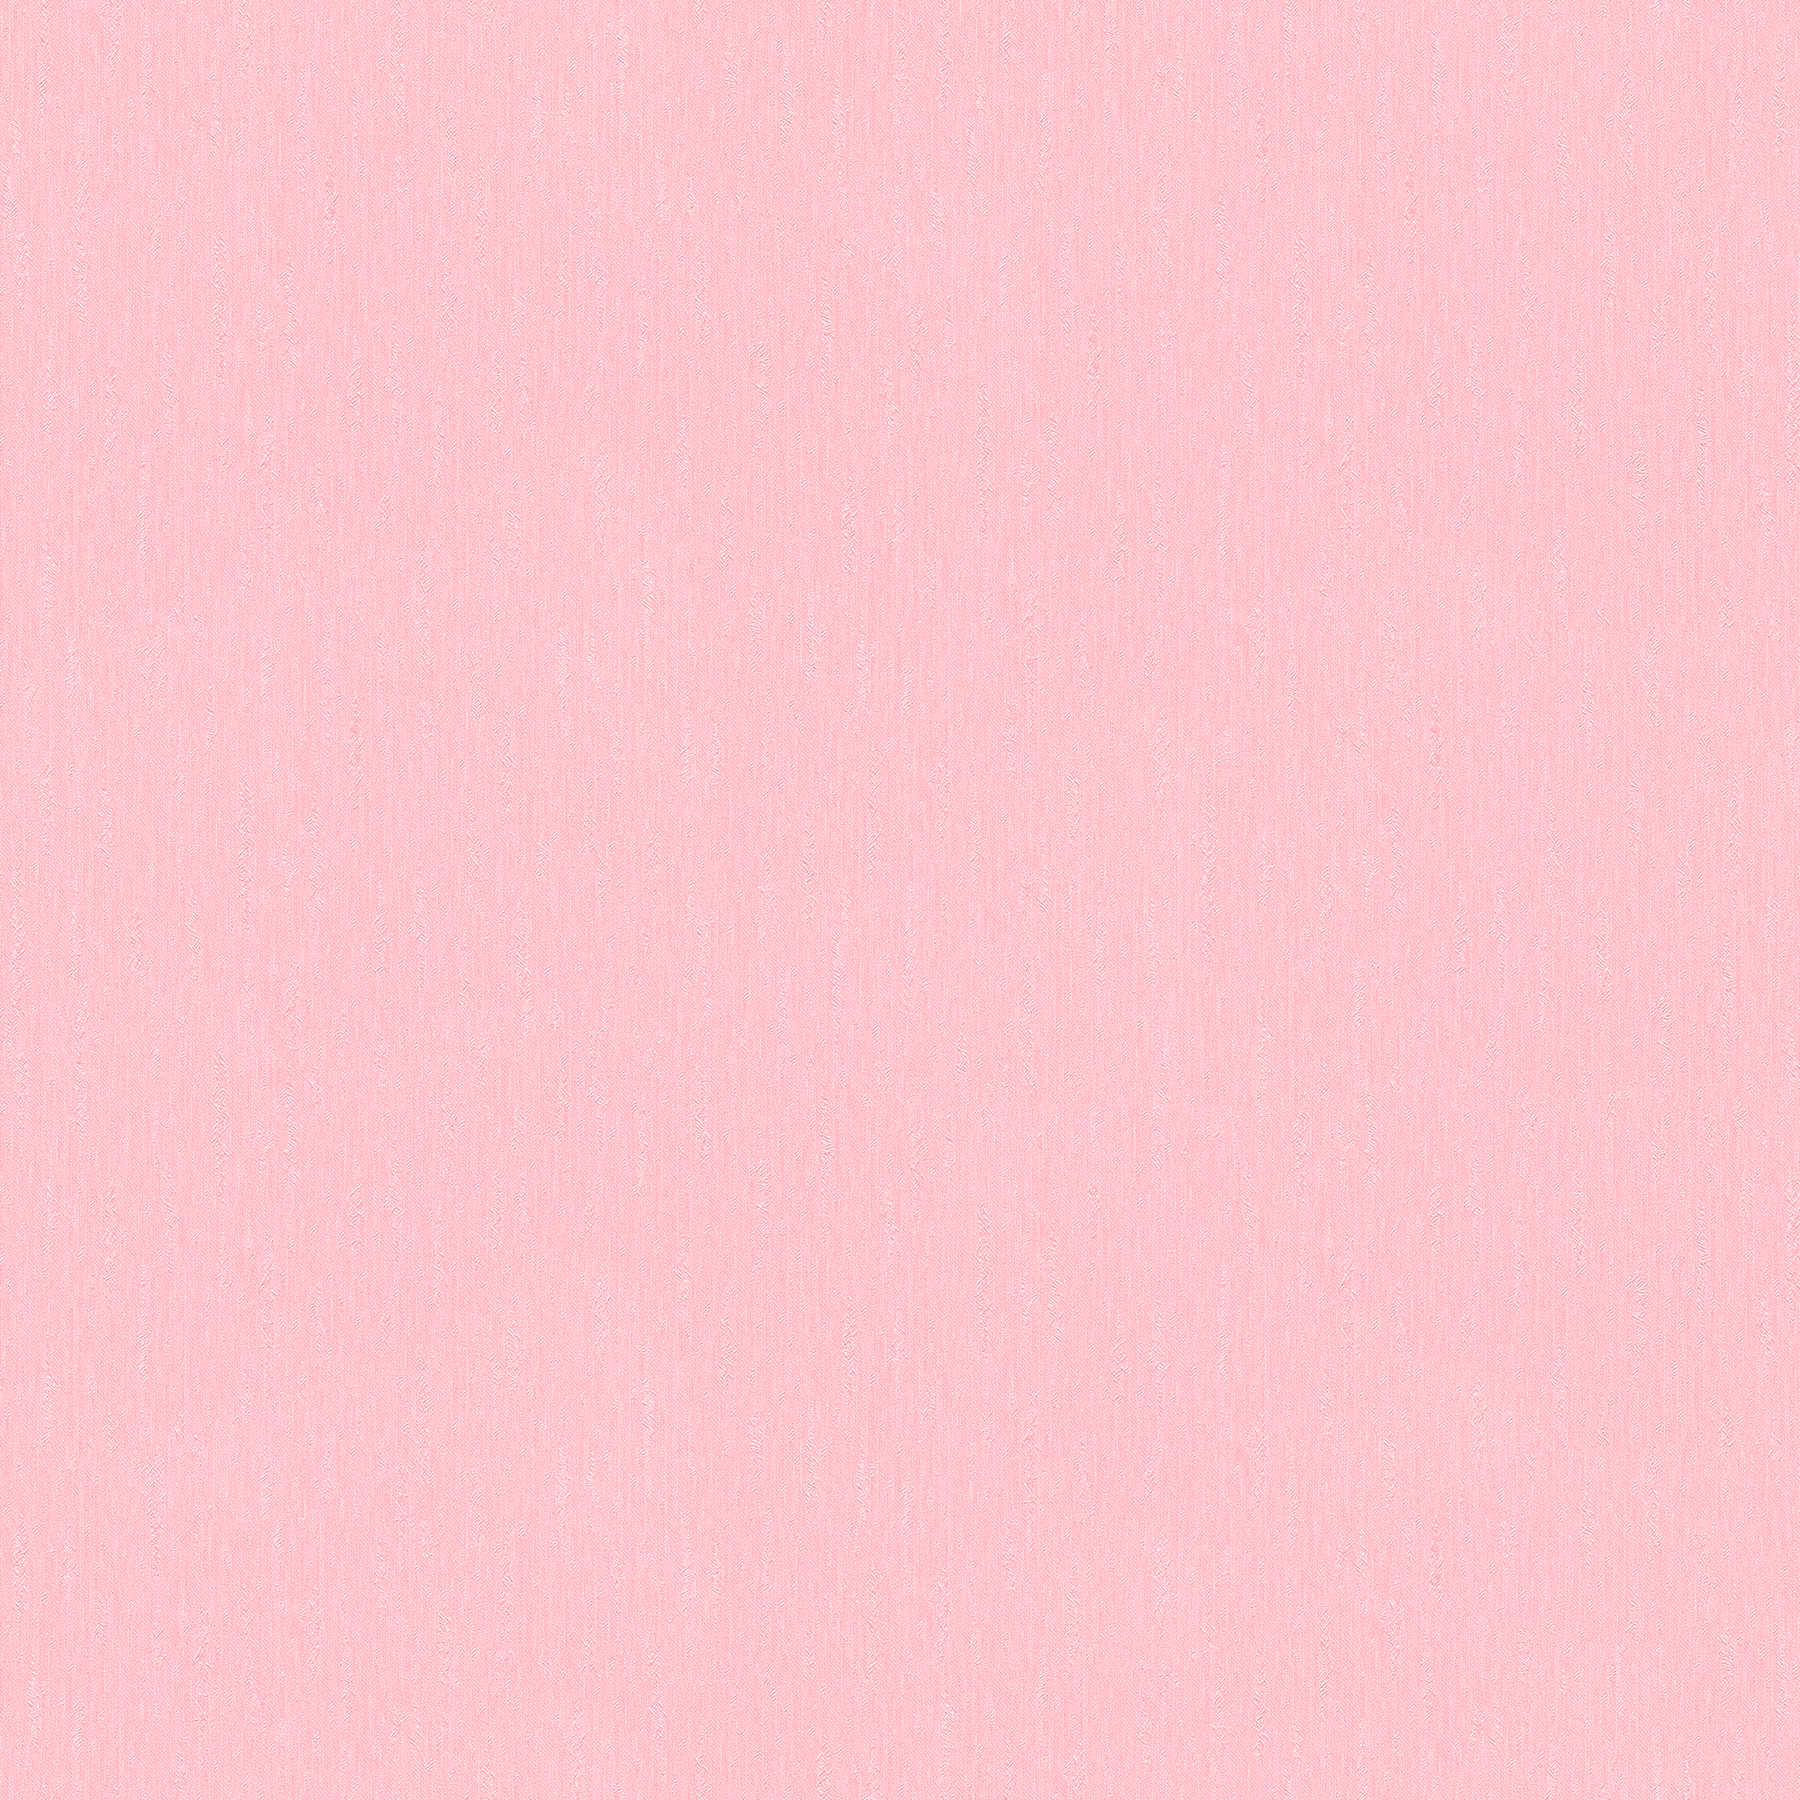 rose papier peint intissé uni rose pâle avec surface structurée
